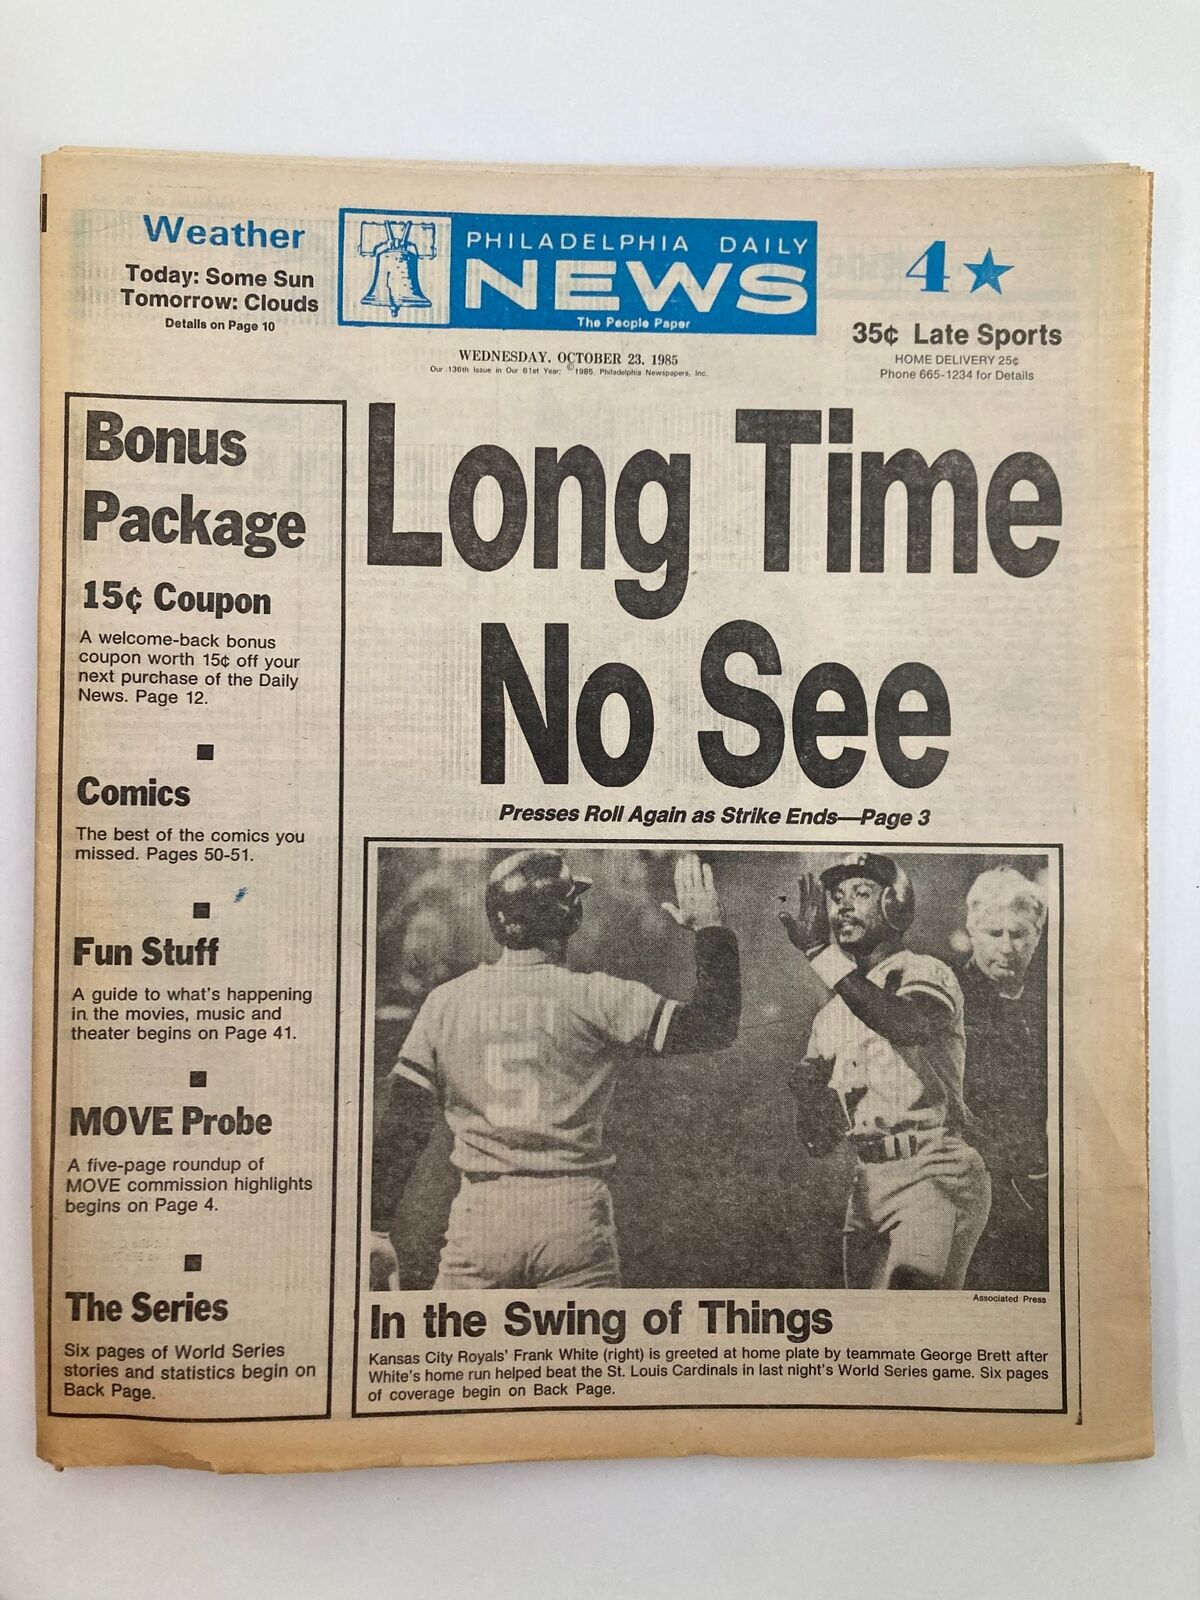 Philadelphia Daily News Tabloid October 23 1985 MLB Frank White, George Brett